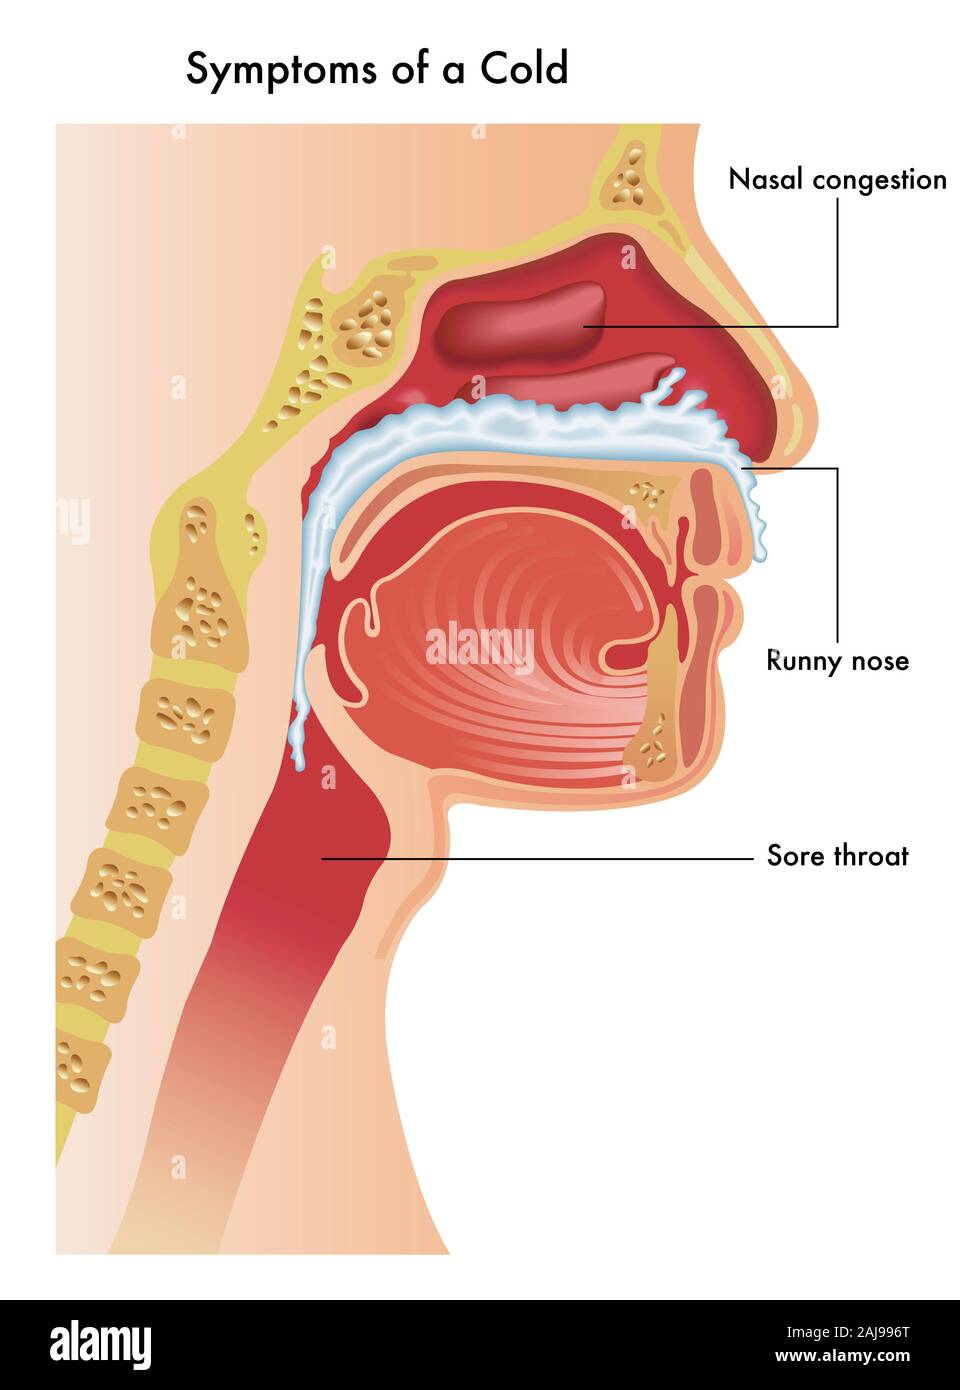 Eine medizinische Illustration der der oberen Atemwege einer Person mit den Symptomen einer Erkältung. Stockfoto